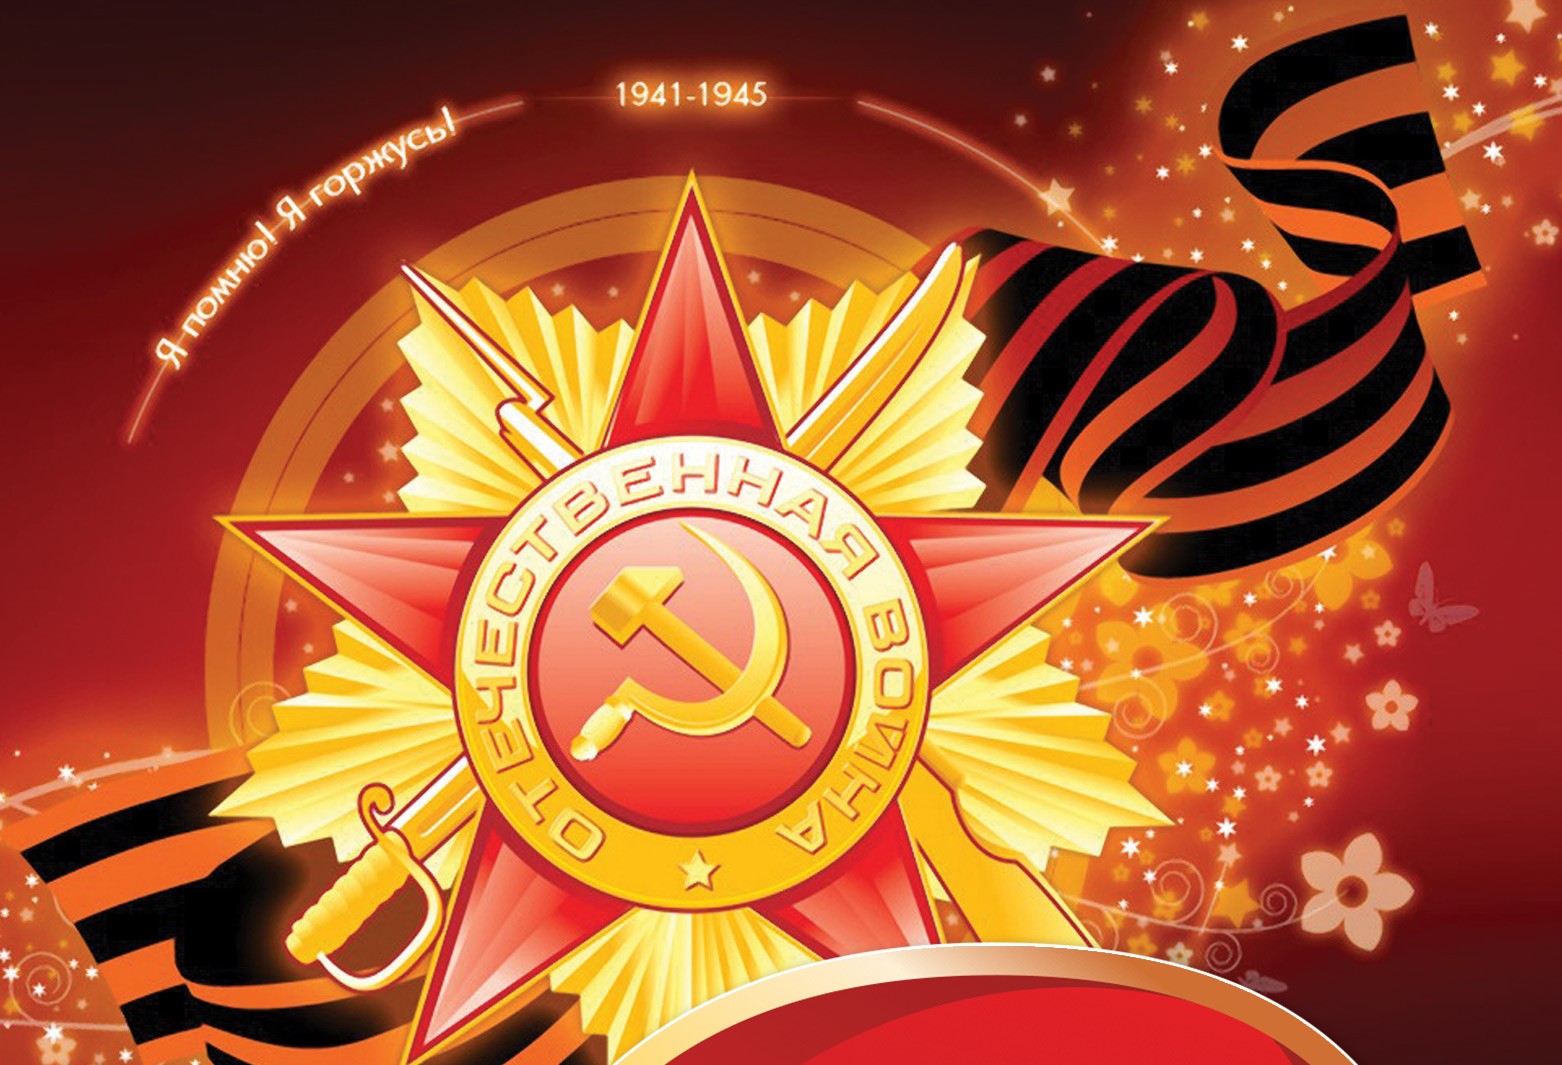 Фон для выставки о Великой Отечественной войне